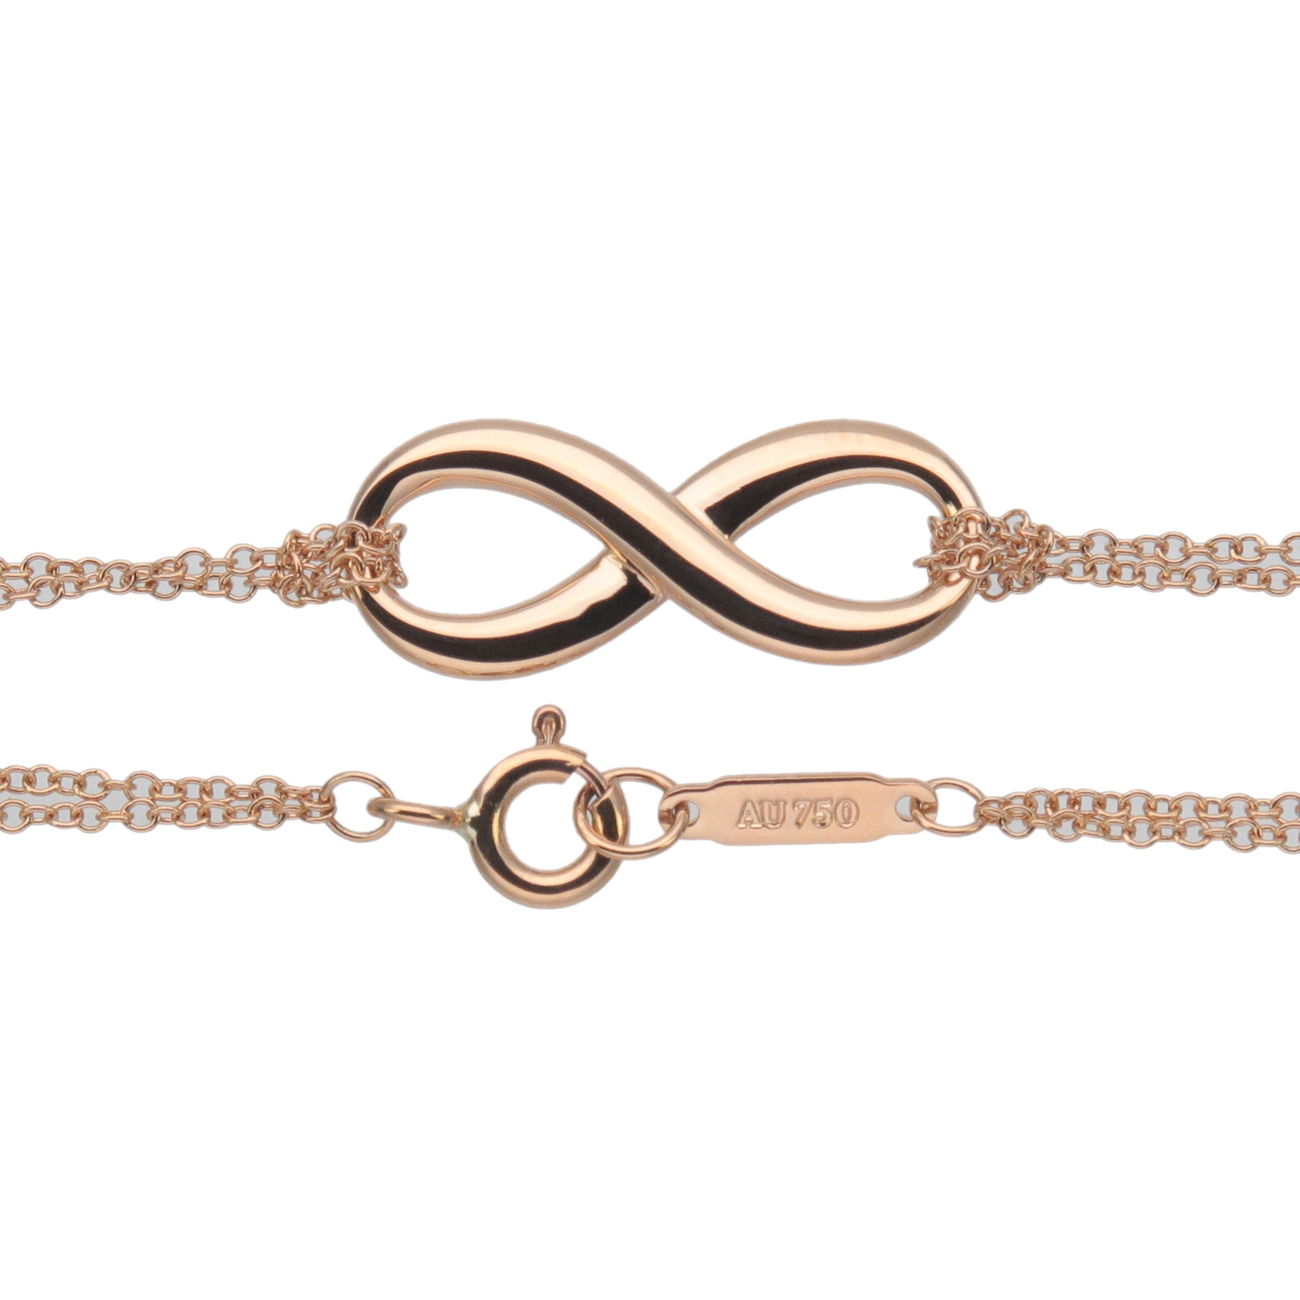 Tiffany&Co. Tiffany Infinity Bracelet K18PG 750PG Rose Gold